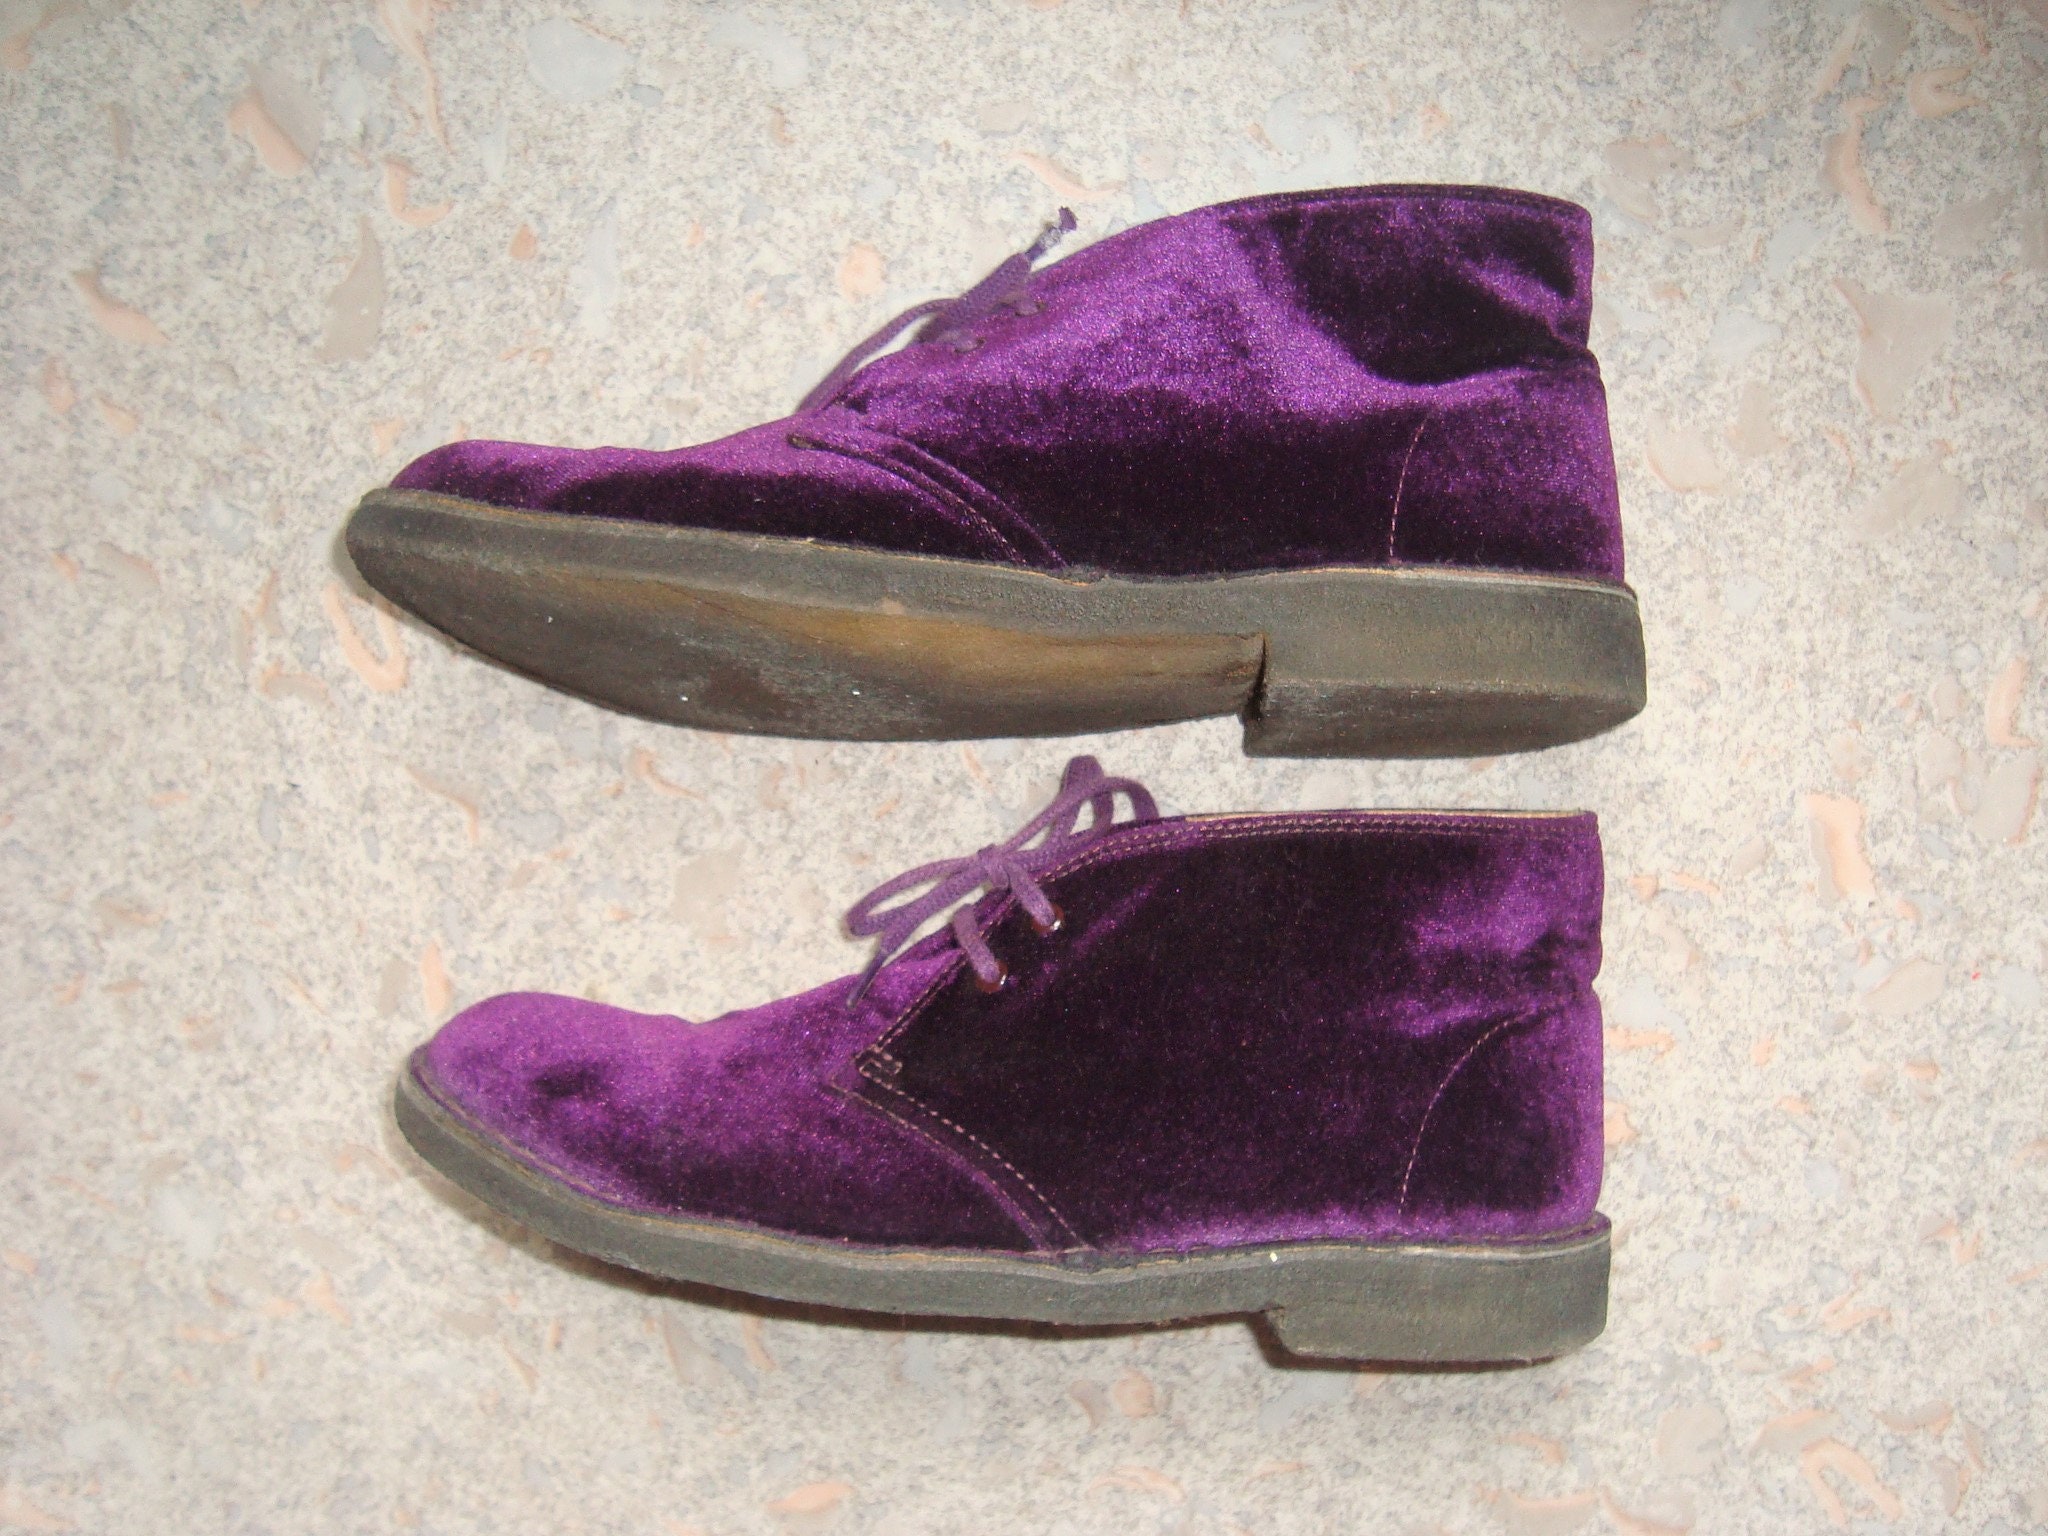 Schoenen Herenschoenen Sneakers & Sportschoenen Sneakers met veters Chaussures Homme Clarks Original's Velours Violet Pointure 41 